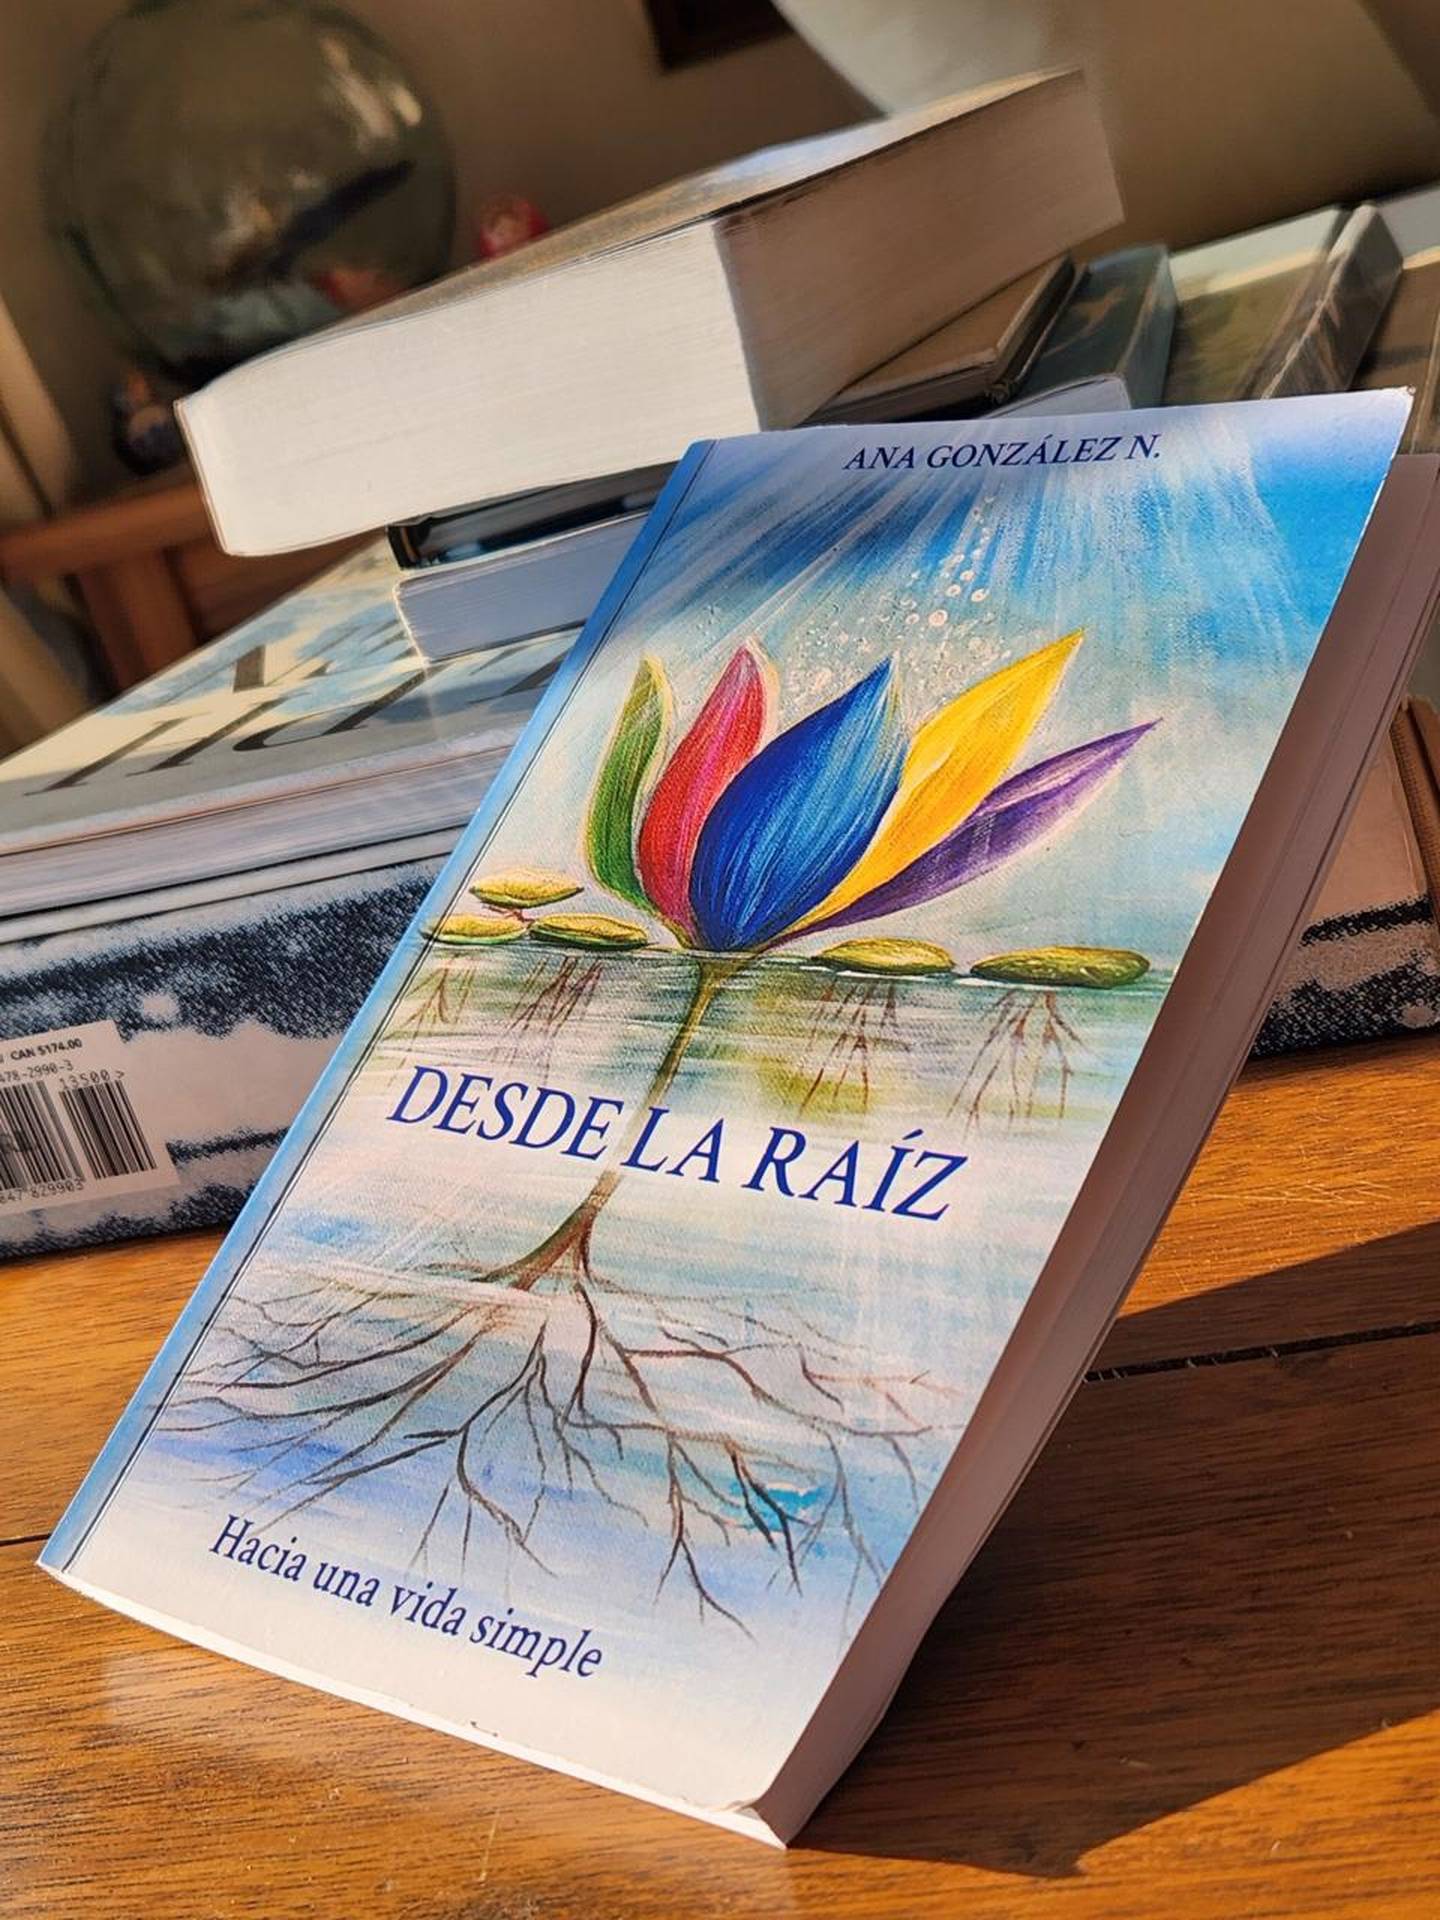 La periodista costarricense, Ana González, publicó un libro que se llama “Desde la raíz. Hacia una vida simple”, el cual, como ella misma dice, fue hecho por “un compromiso con Dios”.